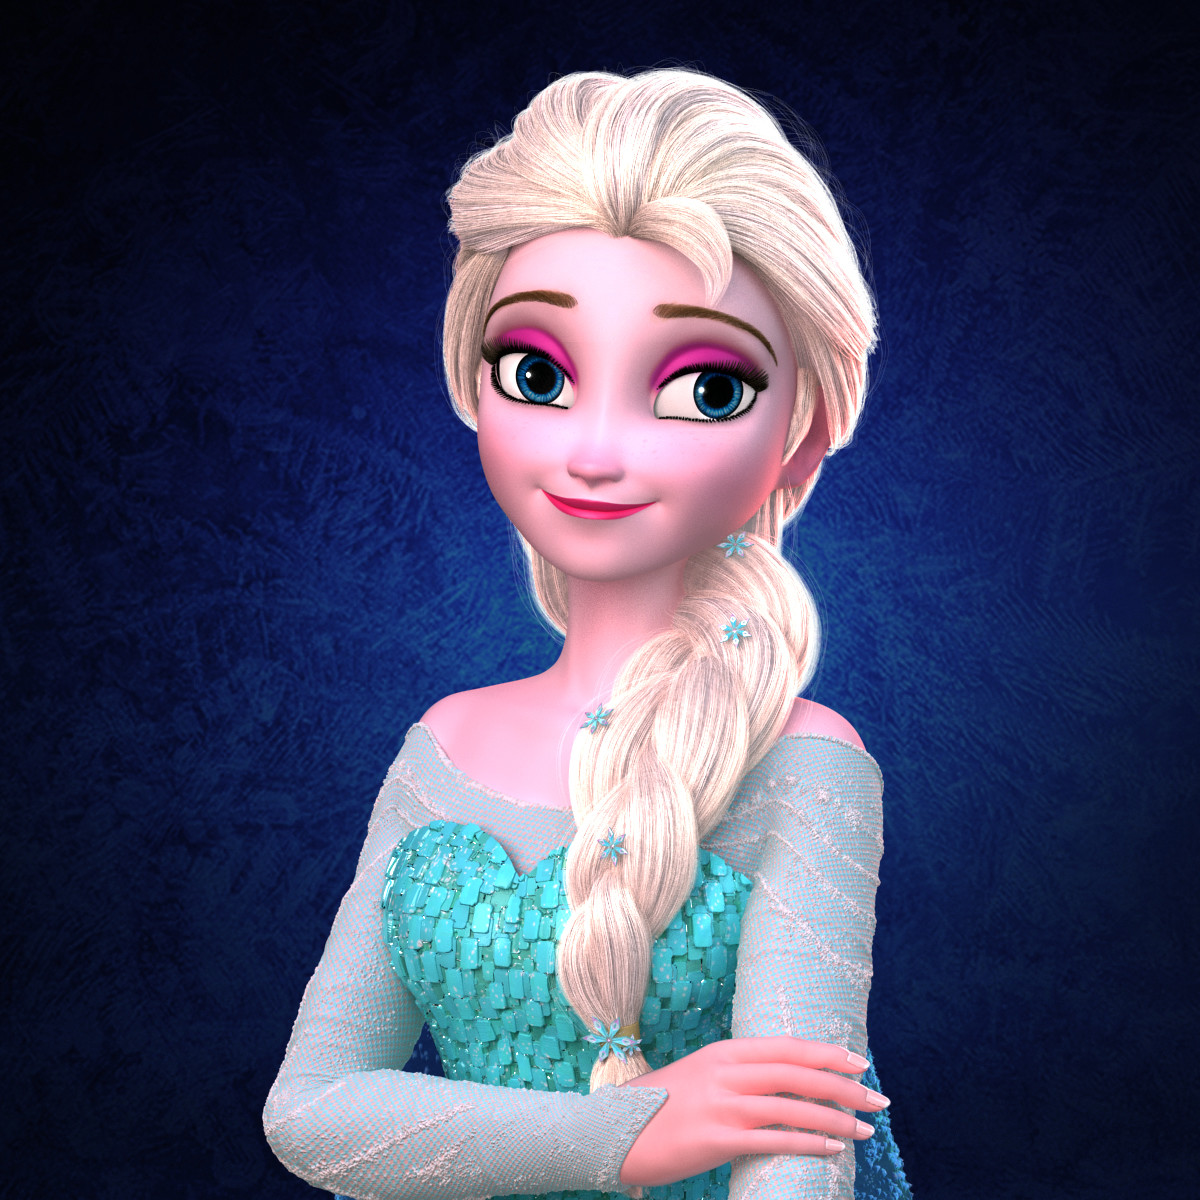 Elsa galvin